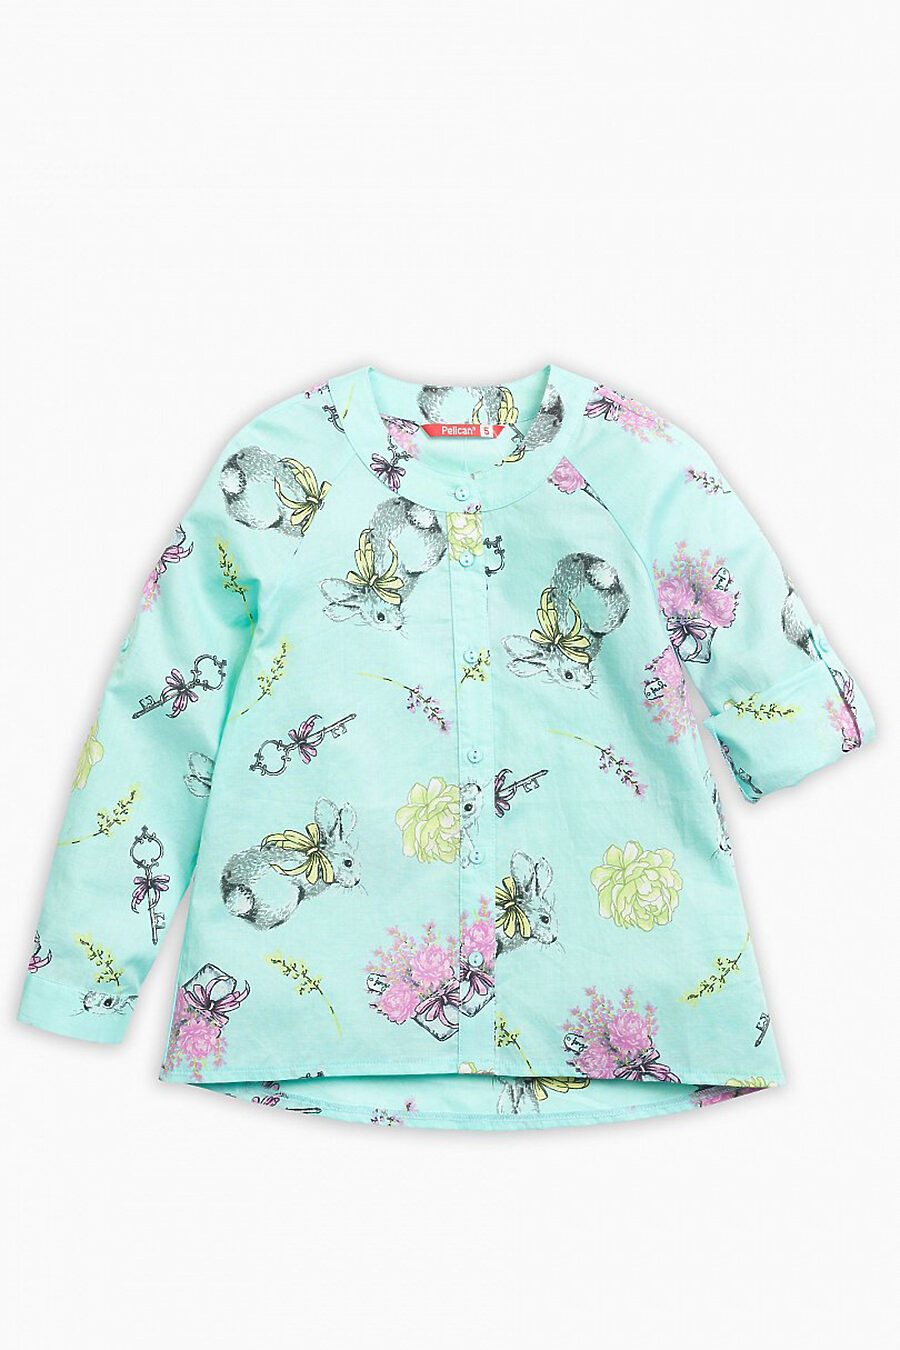 Блуза PELICAN (122821), купить в Moyo.moda